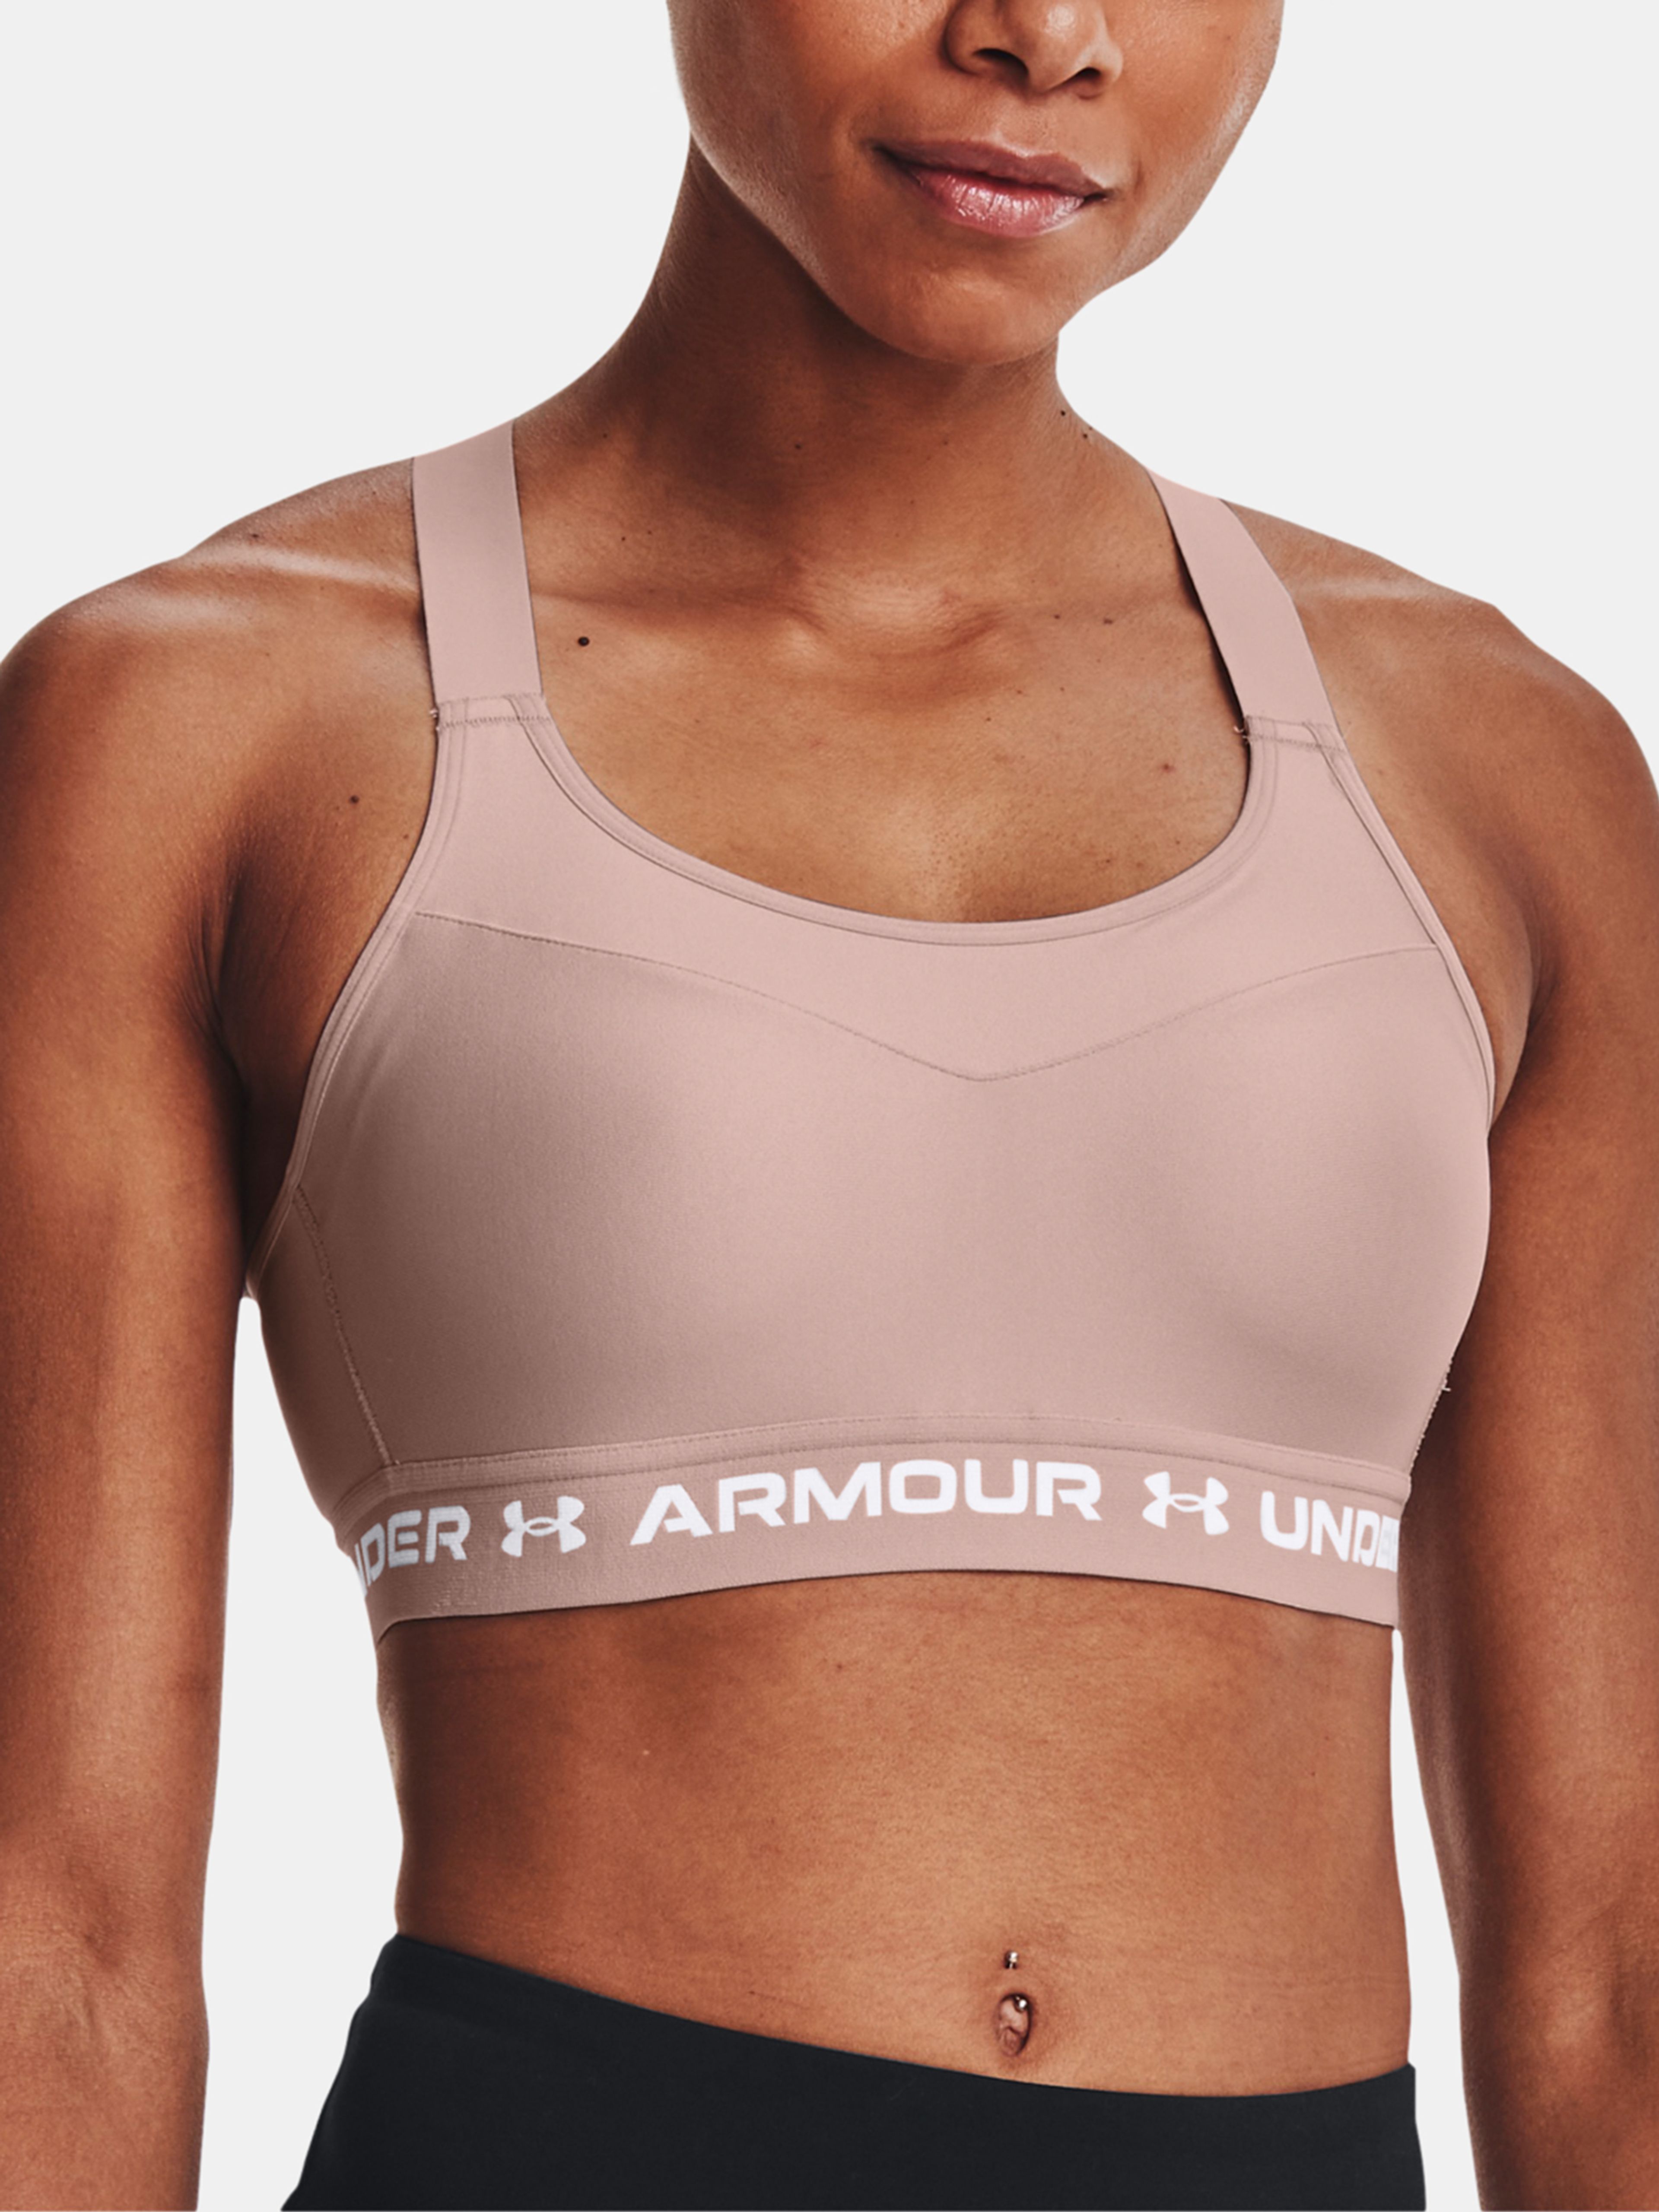  Armour High Crossback Bra, Black - sports bra - UNDER ARMOUR  - 41.63 € - outdoorové oblečení a vybavení shop